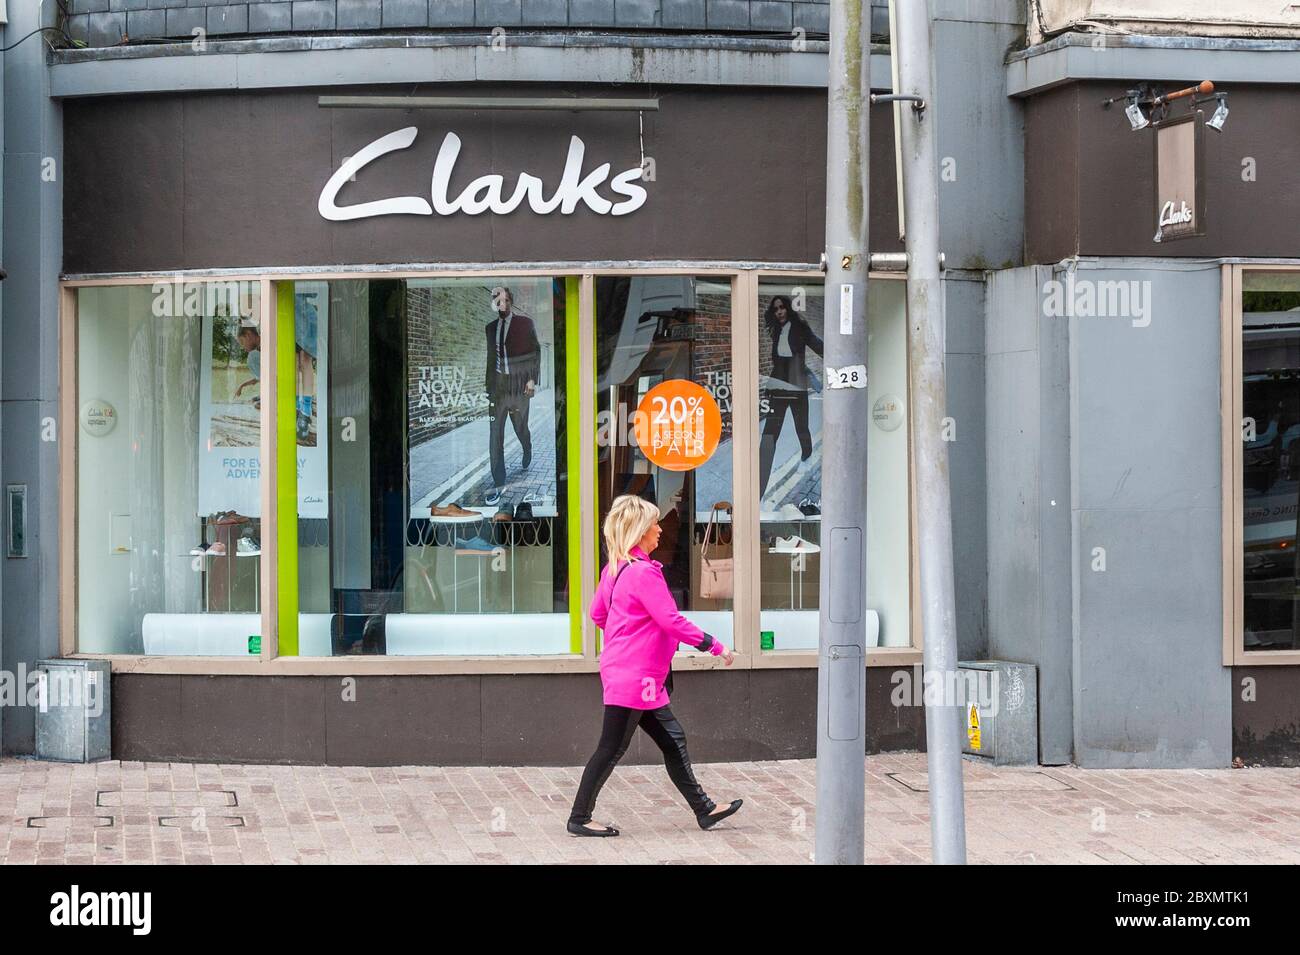 Cork, Irlande. 8 juin 2020. De nombreux magasins en Irlande rouvrent aujourd'hui après une fermeture de 3 mois en raison de la pandémie de Covid-19. Une femme passe devant le magasin Clarks de Patrick Street. Crédit : AG News/Alay Live News Banque D'Images